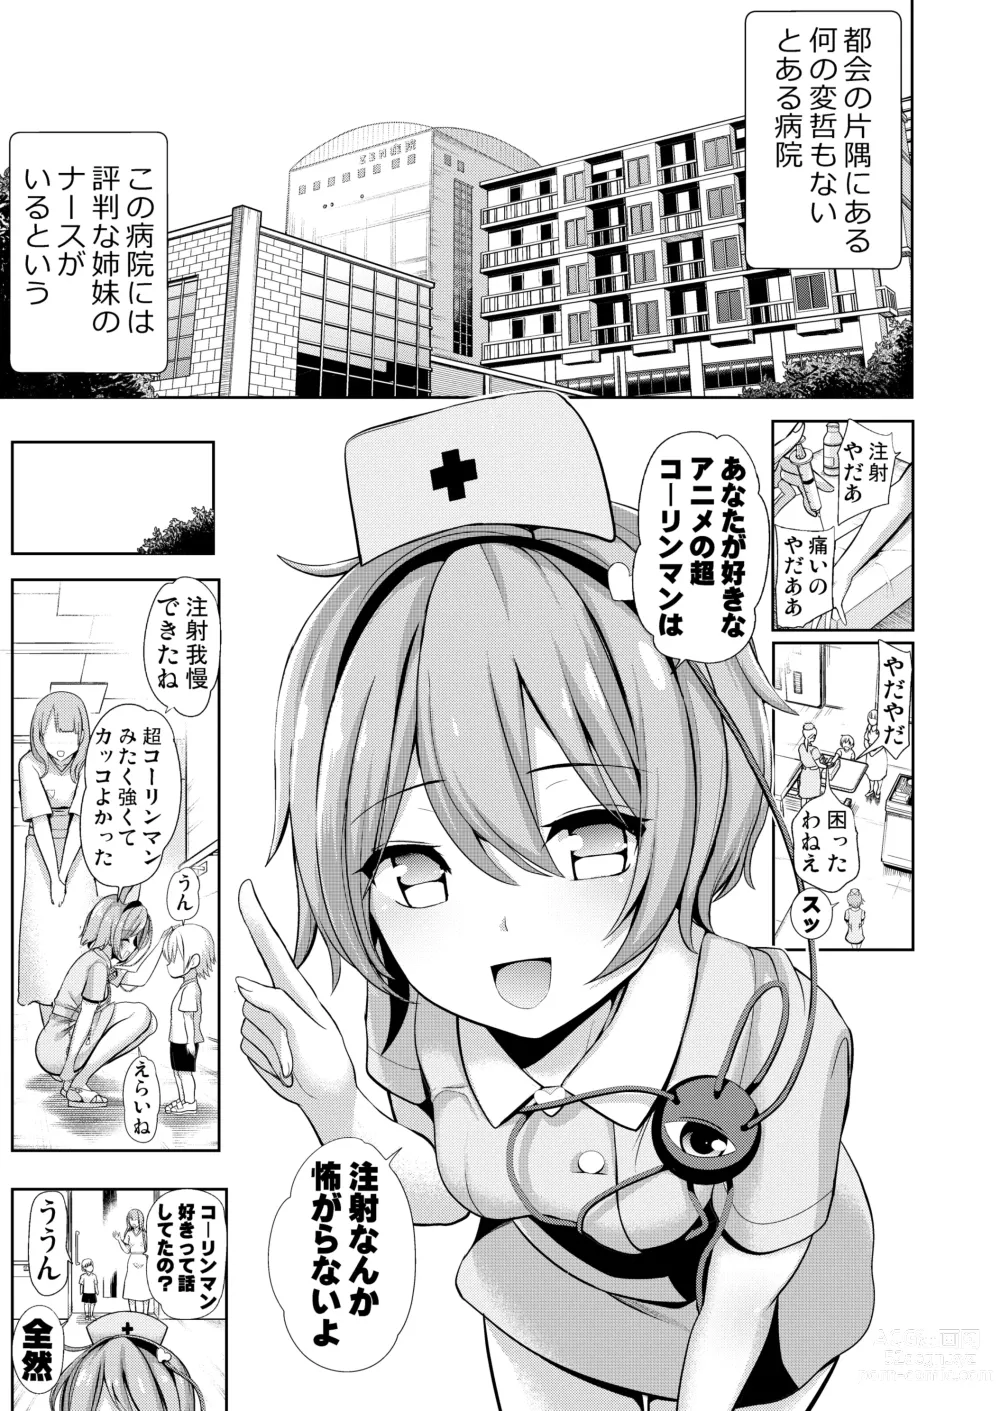 Page 2 of doujinshi Haitokukan Han Komeiji Nurse no Echi Echi Kango Nisshi